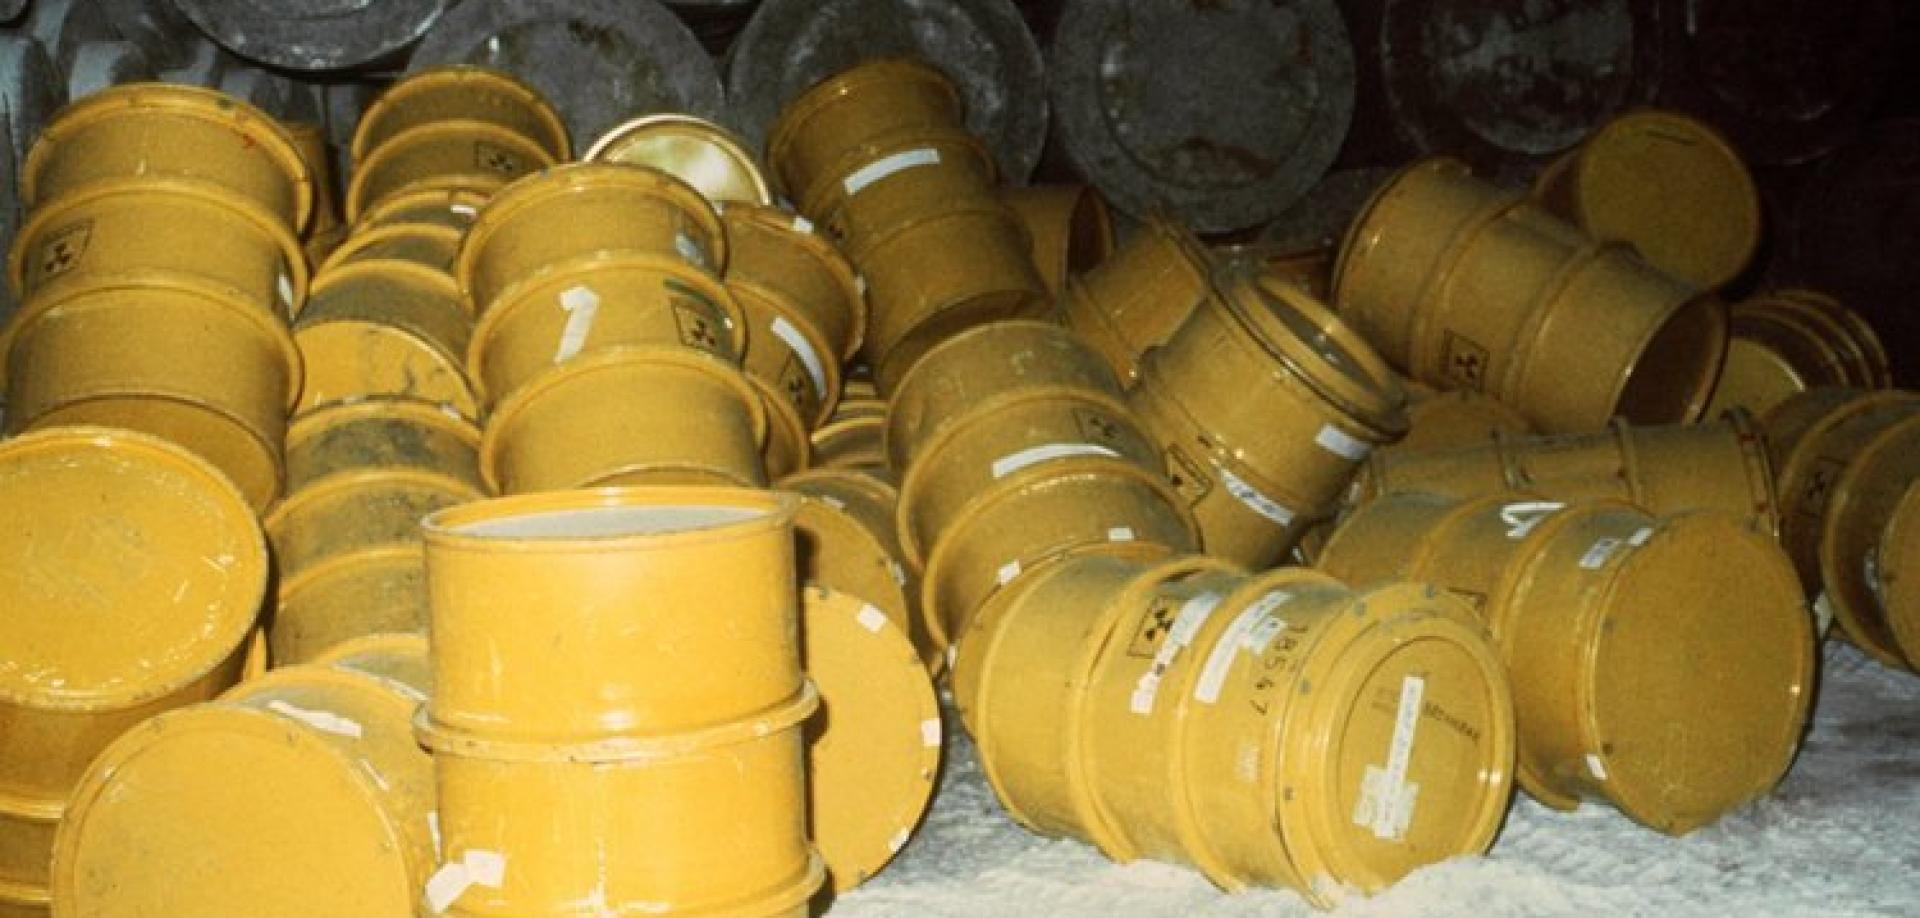 Problémy s uskladněním radioaktivních odpadů v německém úložišti Asse